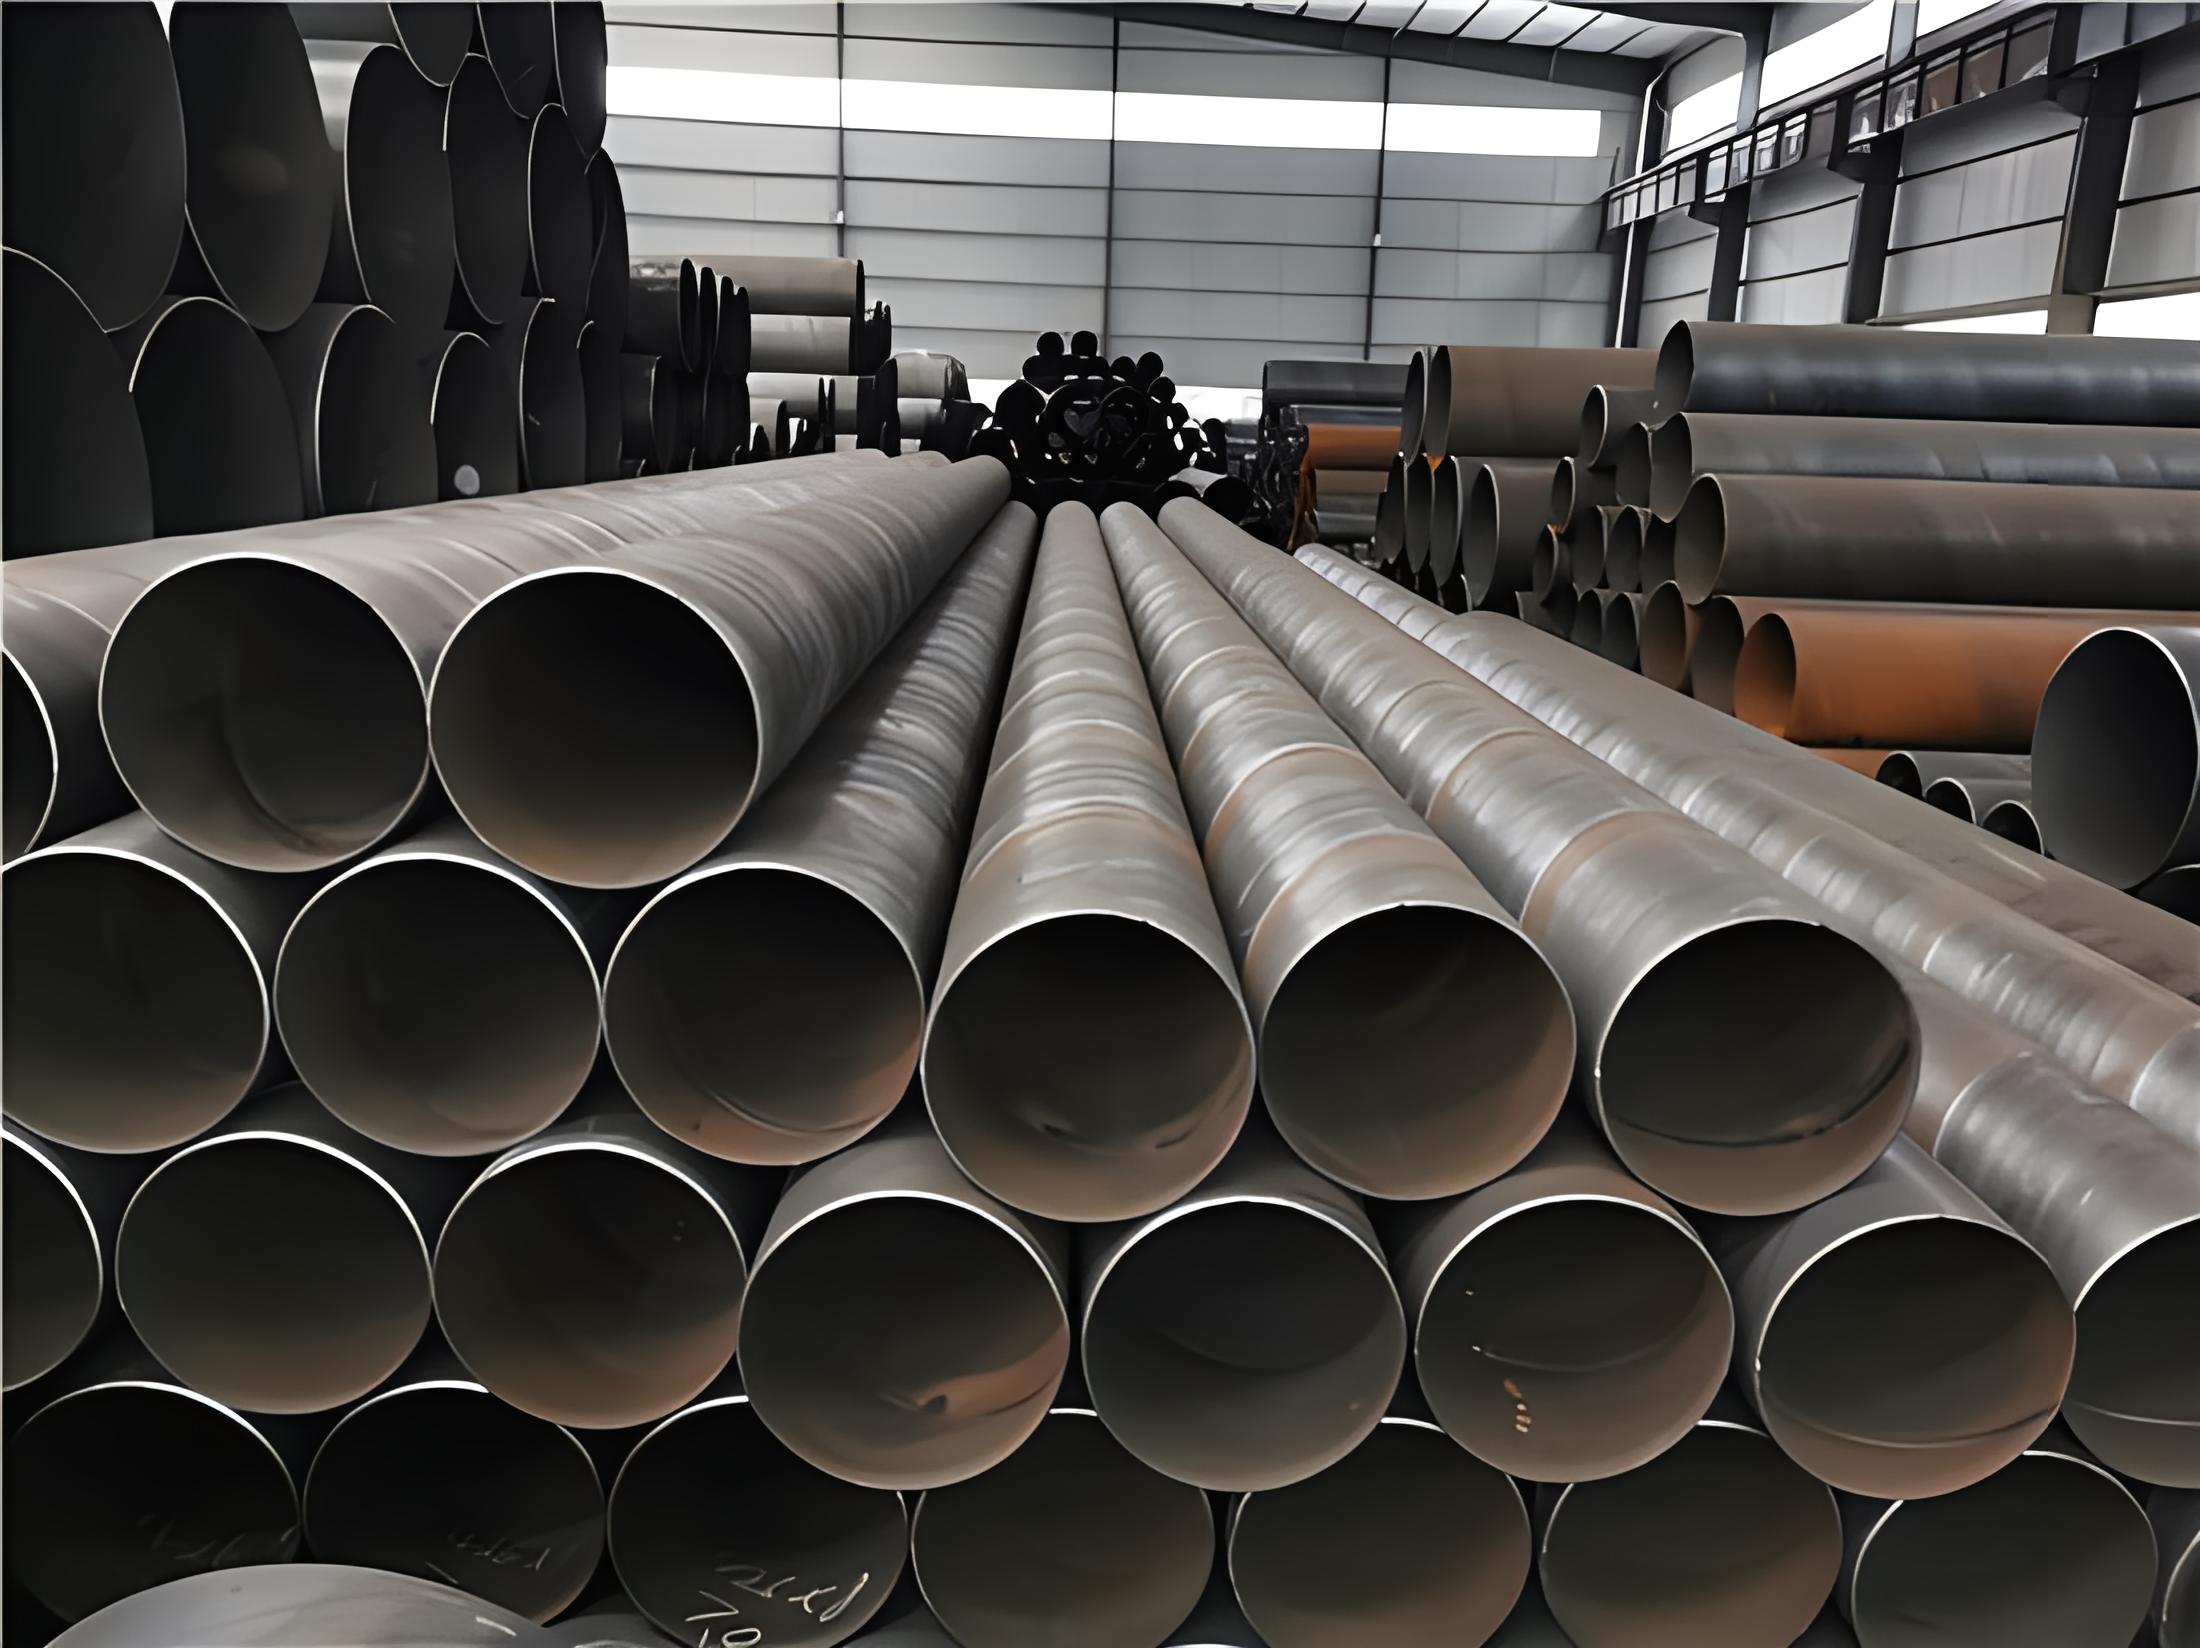 漳州螺旋钢管现代工业建设的坚实基石